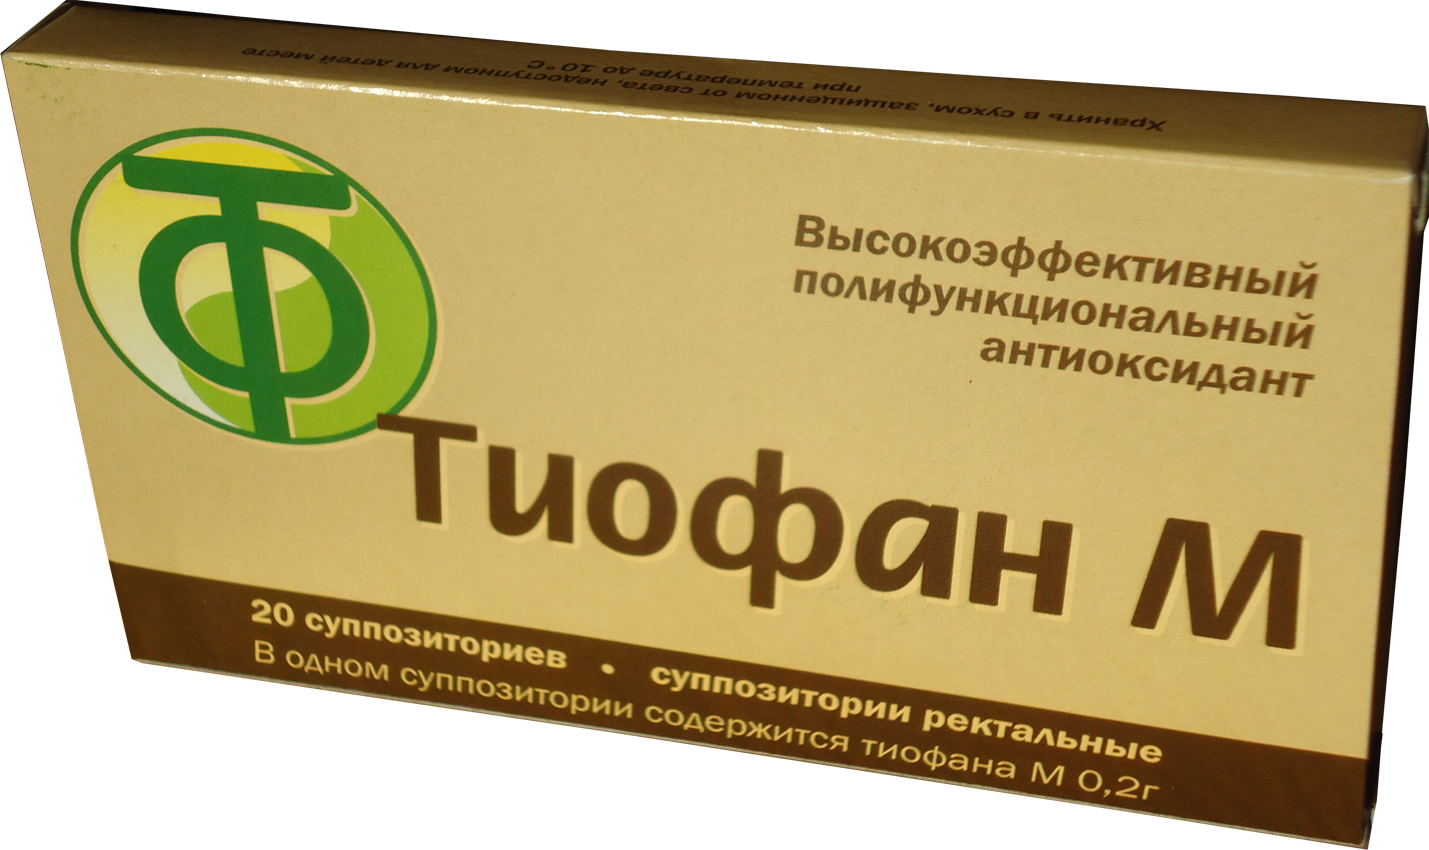  Тиофан-М свечи Суппозитории ректальные 0,2 г для питомцев
